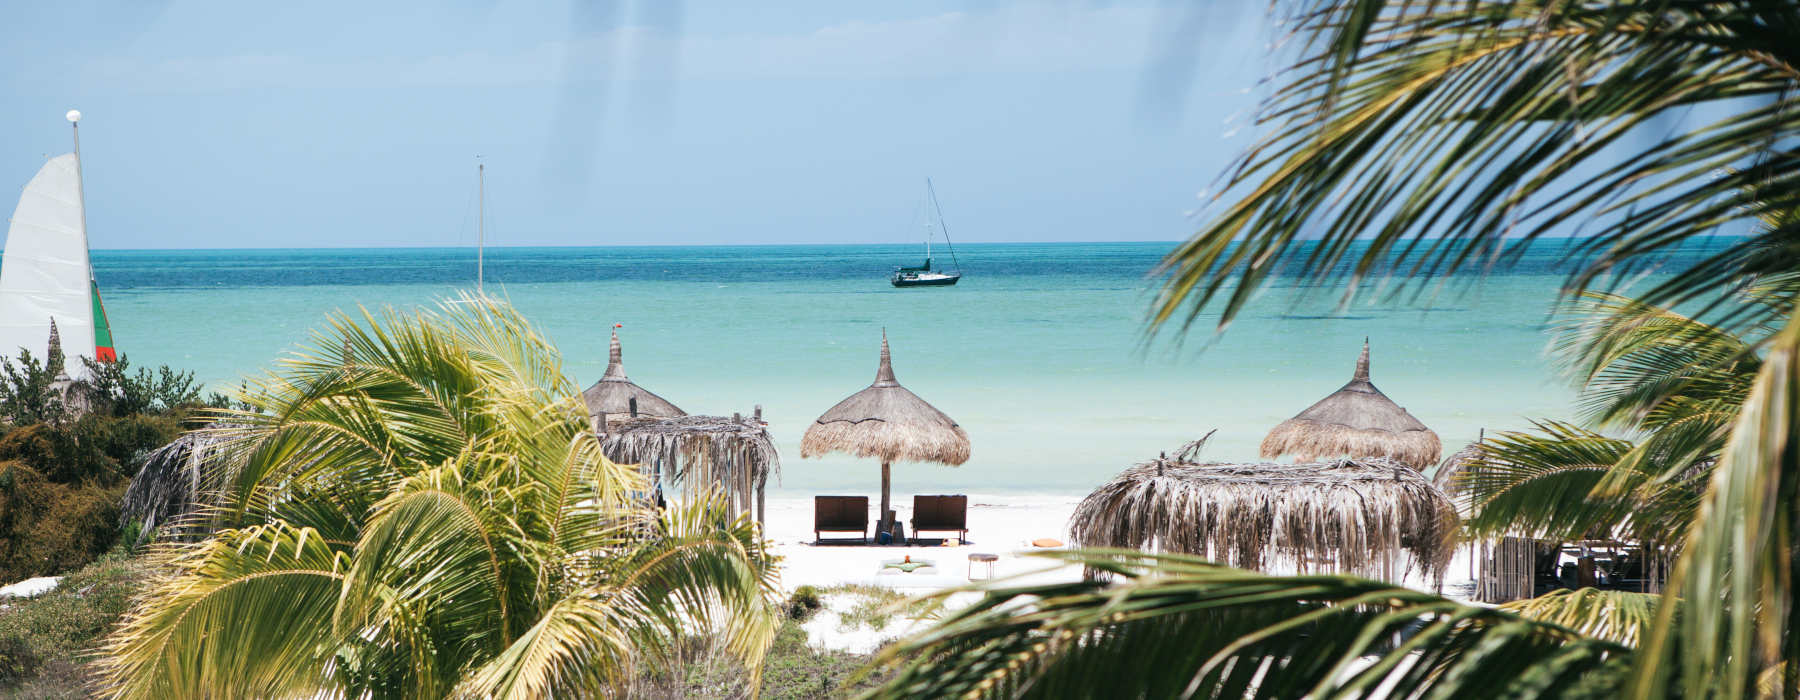 Honeymoon Yucatan Peninsula